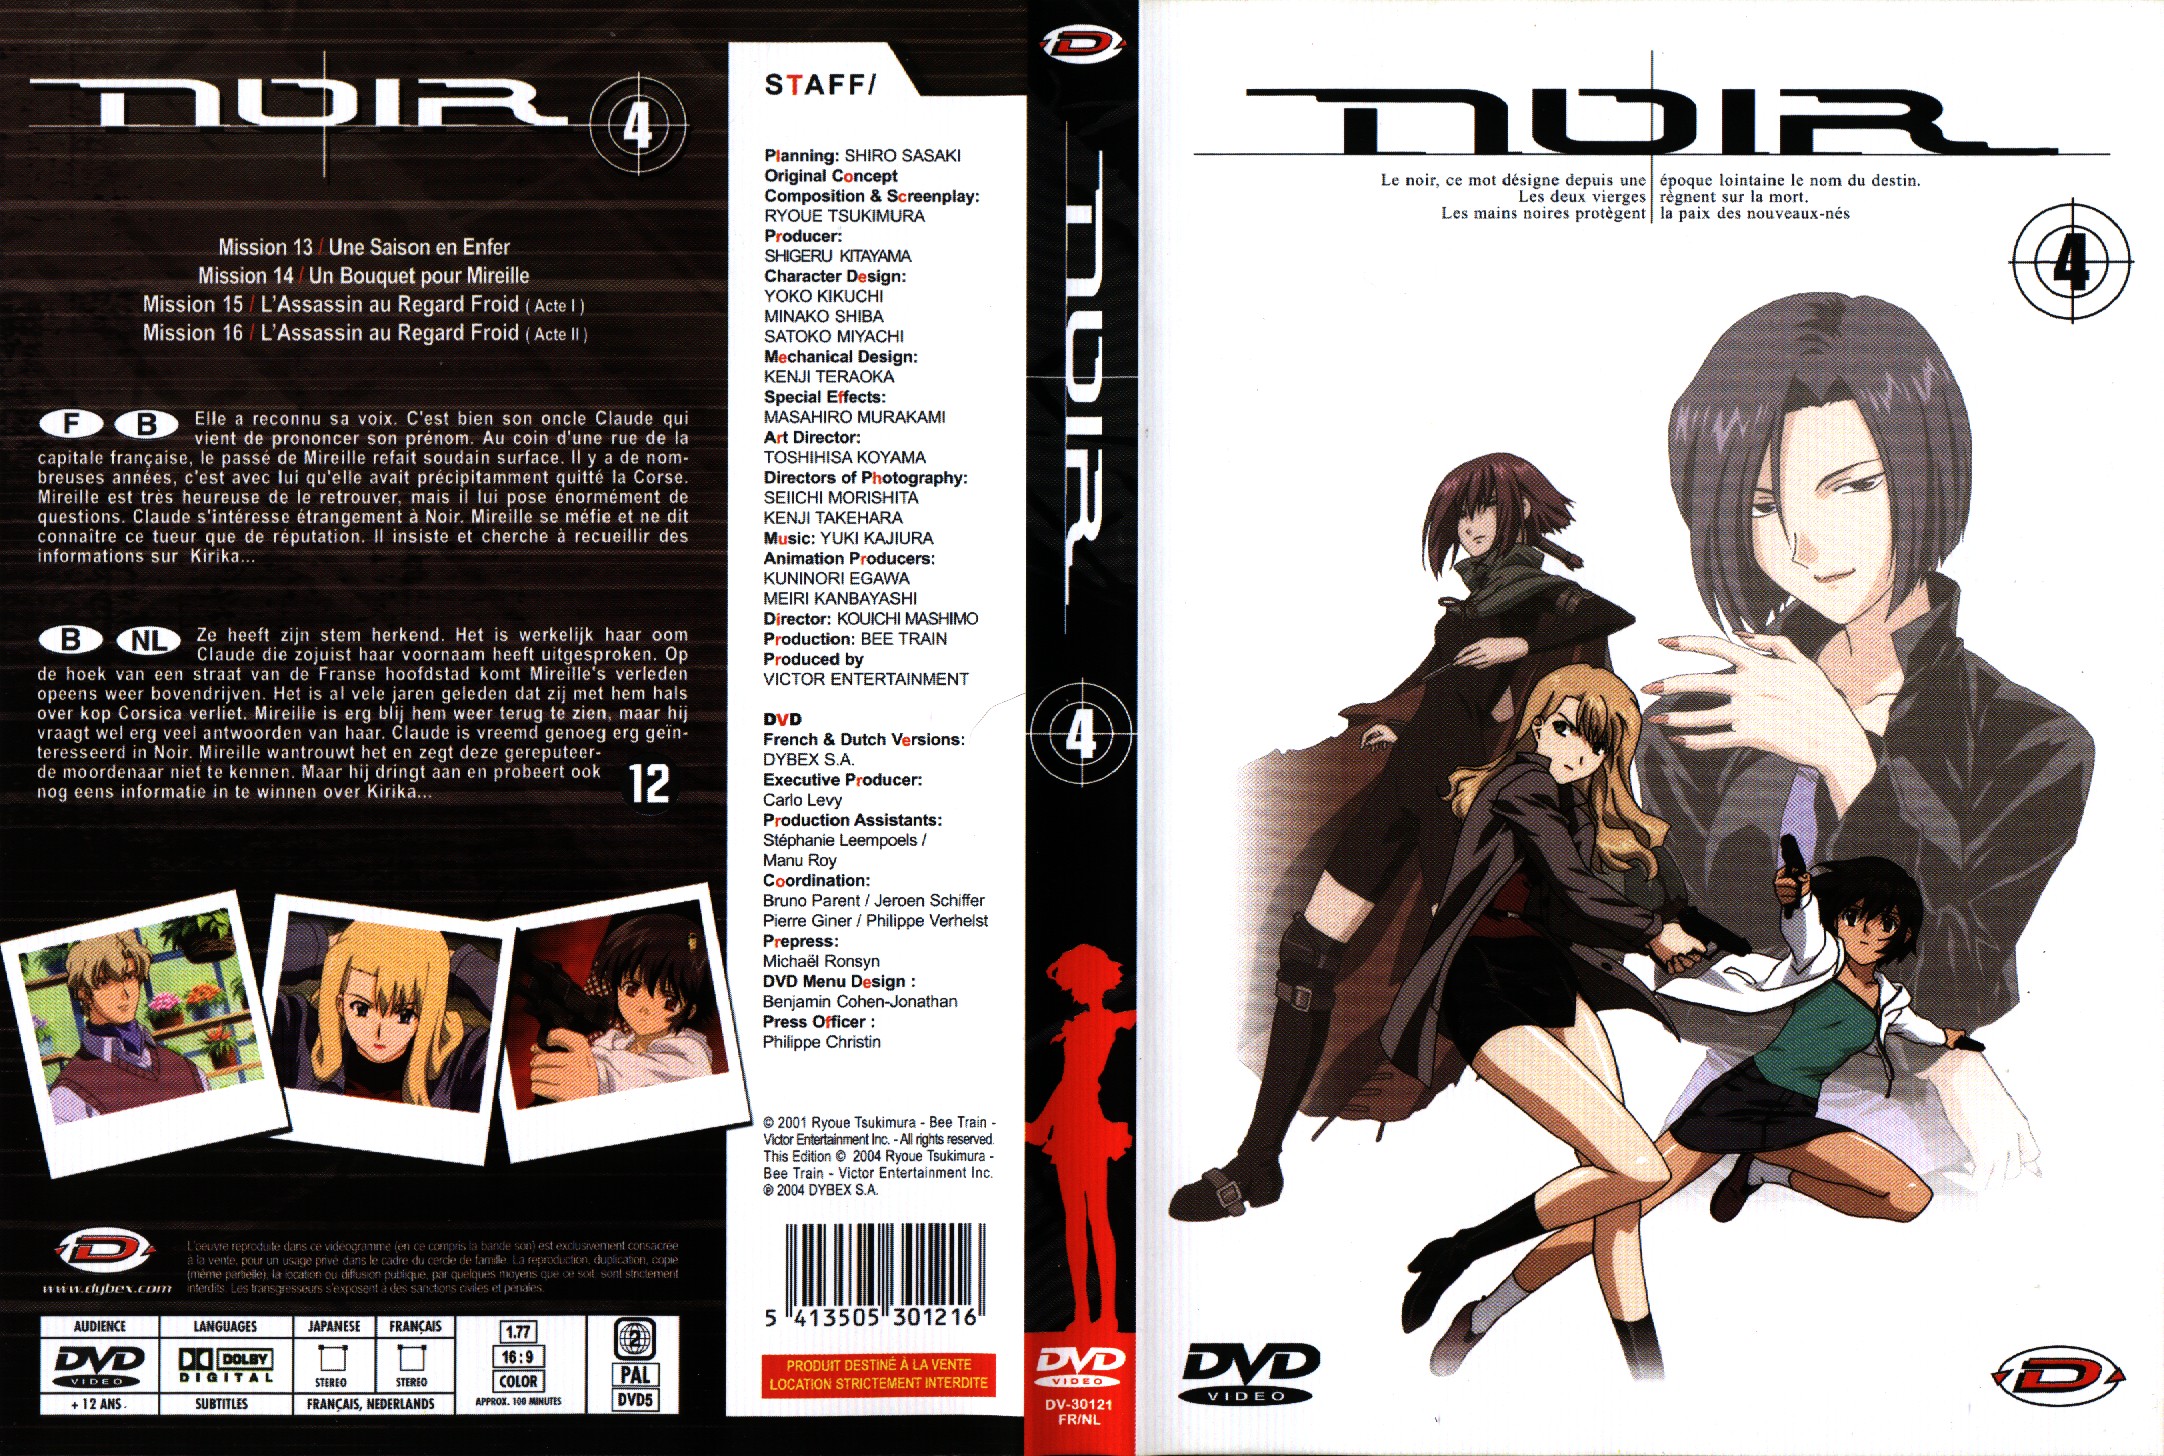 Jaquette DVD Noir vol 4